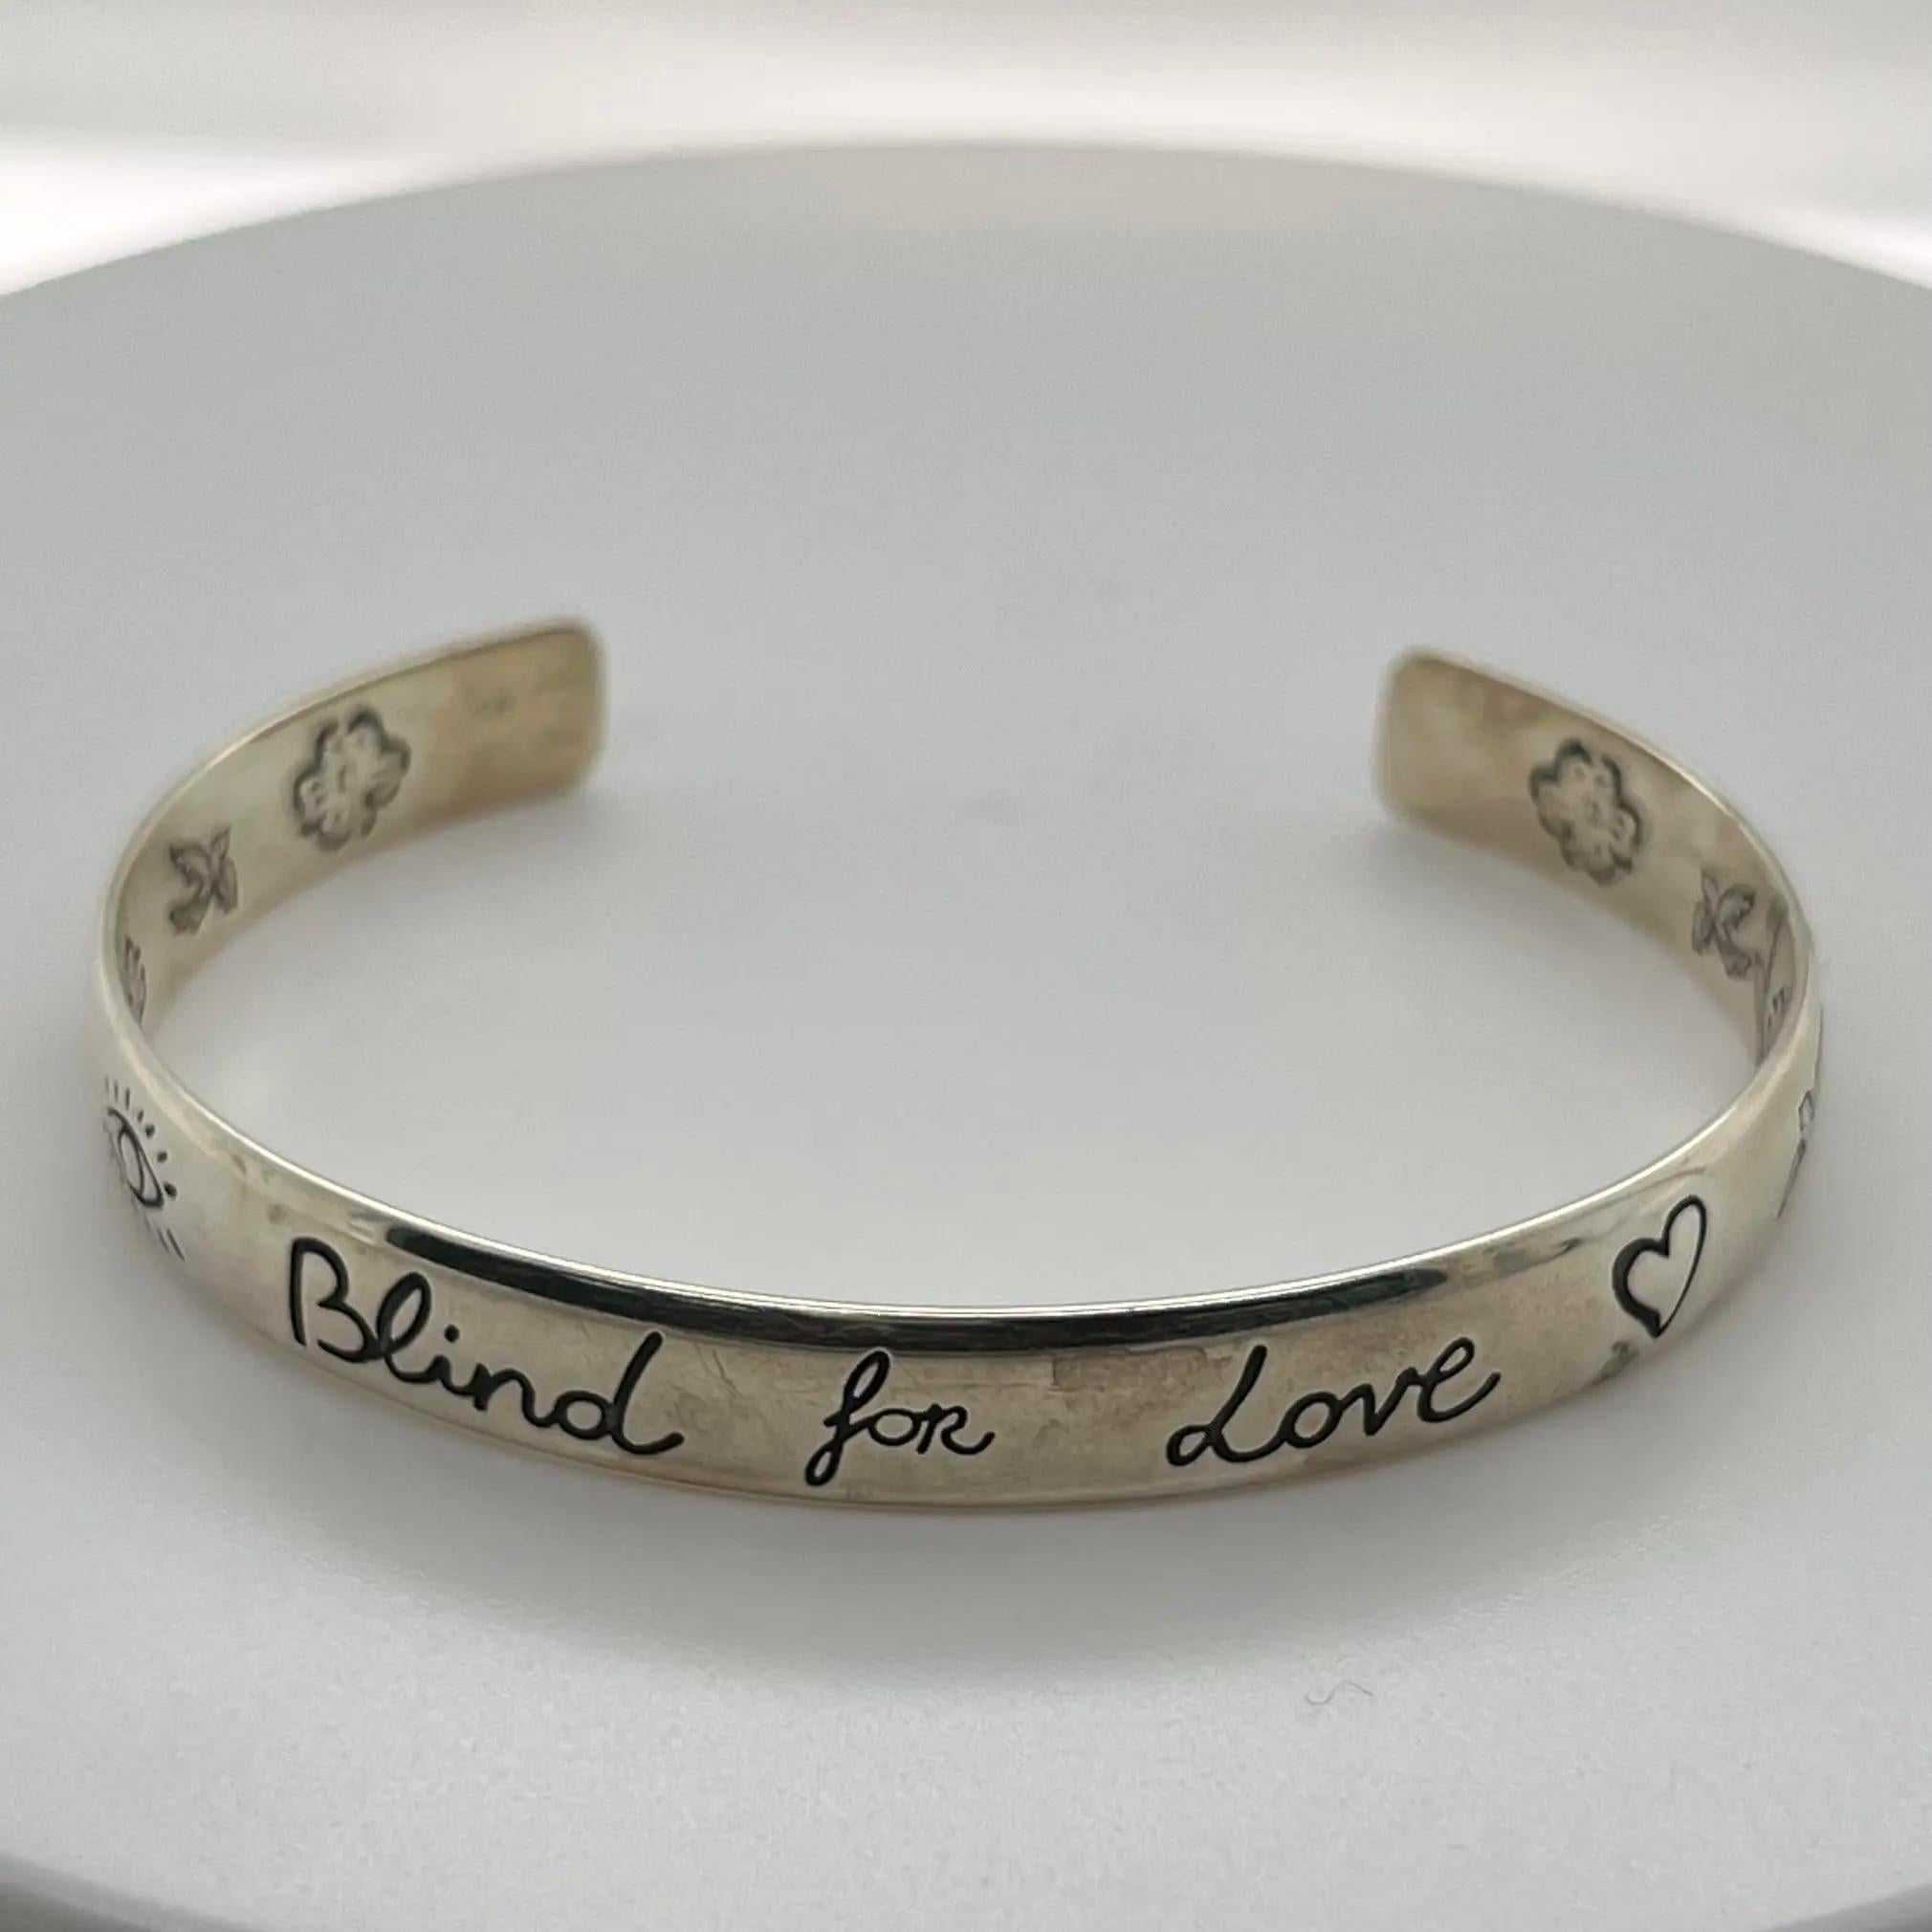 Ce bracelet manchette est conçu en argent sterling 925 et présente des motifs symboliques gravés de Gucci, notamment l'œil, des cœurs, des oiseaux, des fleurs et la phrase 